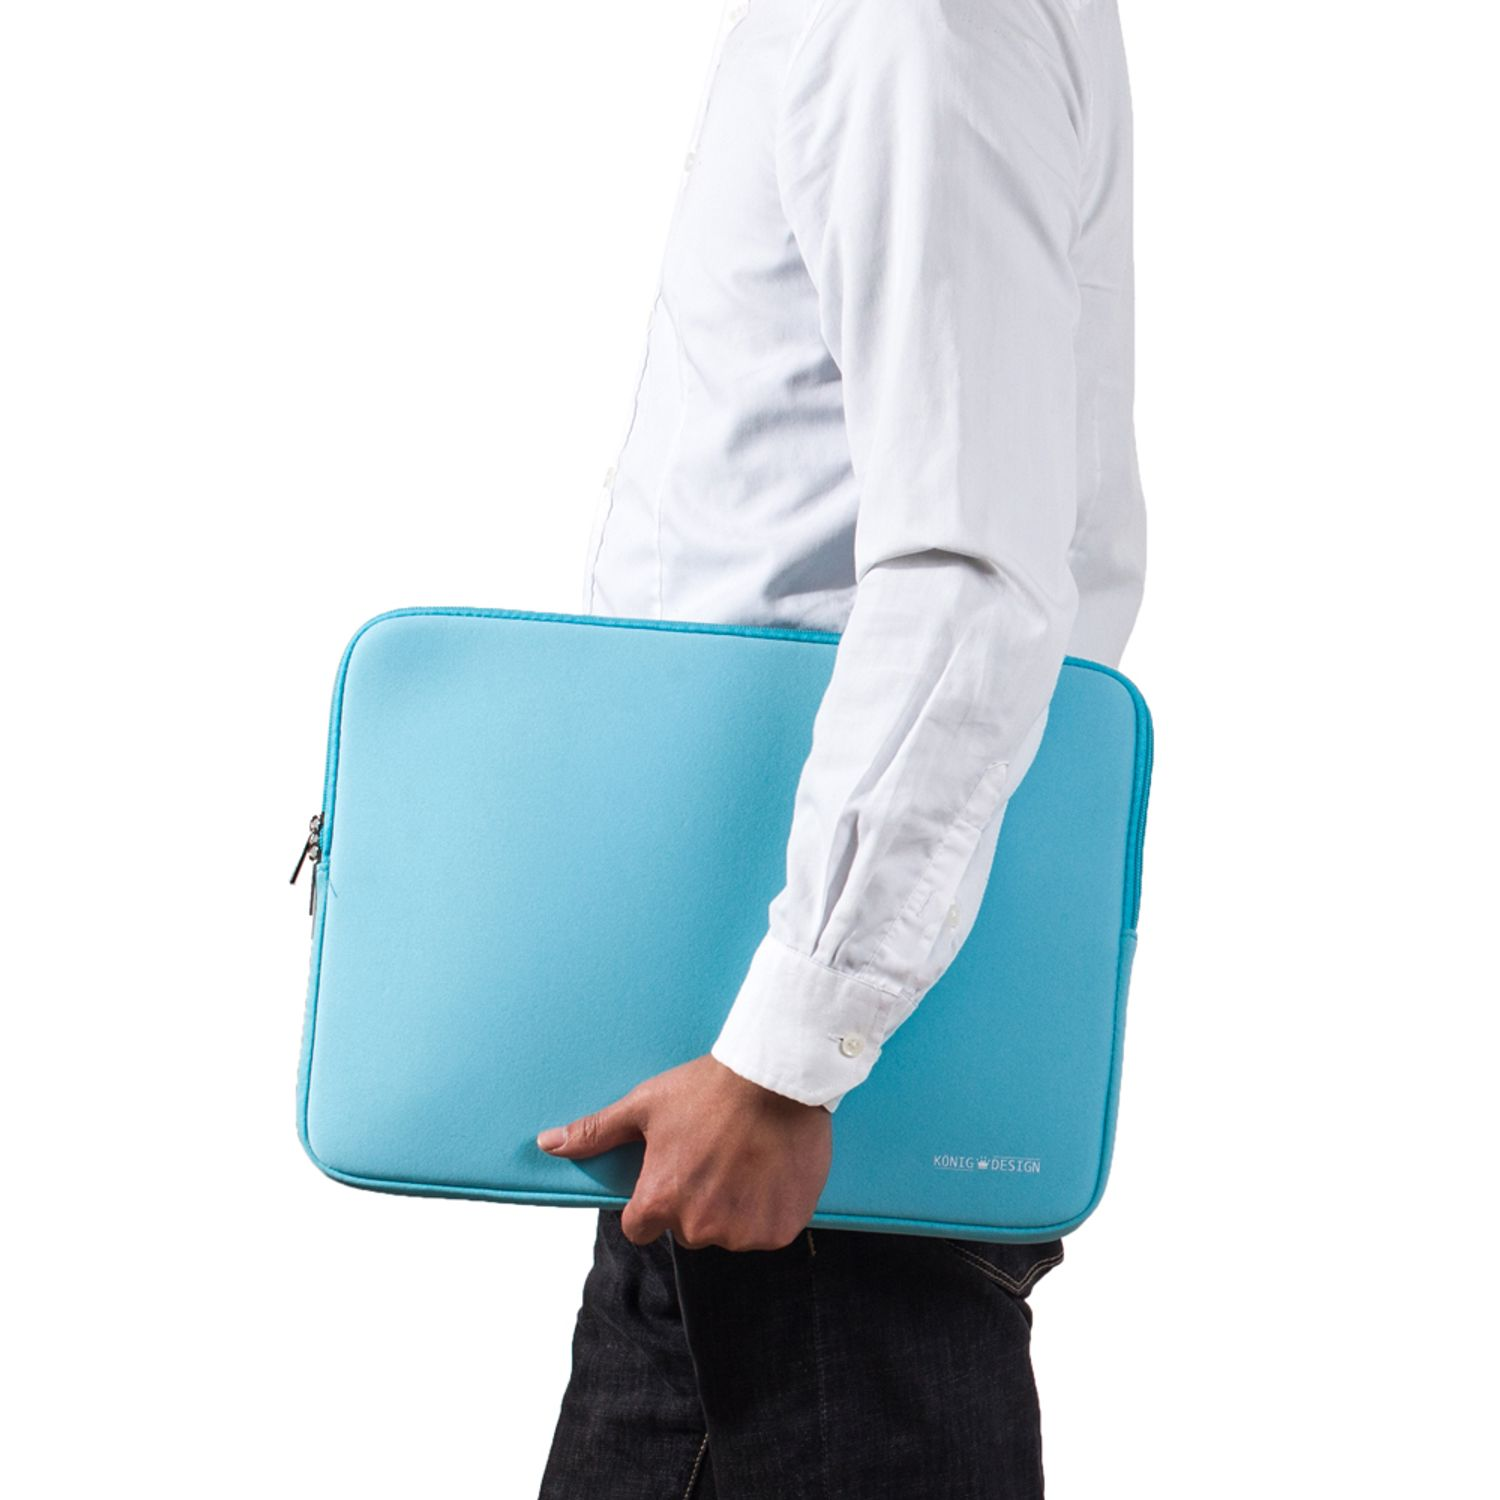 Neoprene, Laptoptasche Notebooktasche KÖNIG Blau Apple Laptop Sleeve für Tasche Samsung Universal DESIGN Lenovo